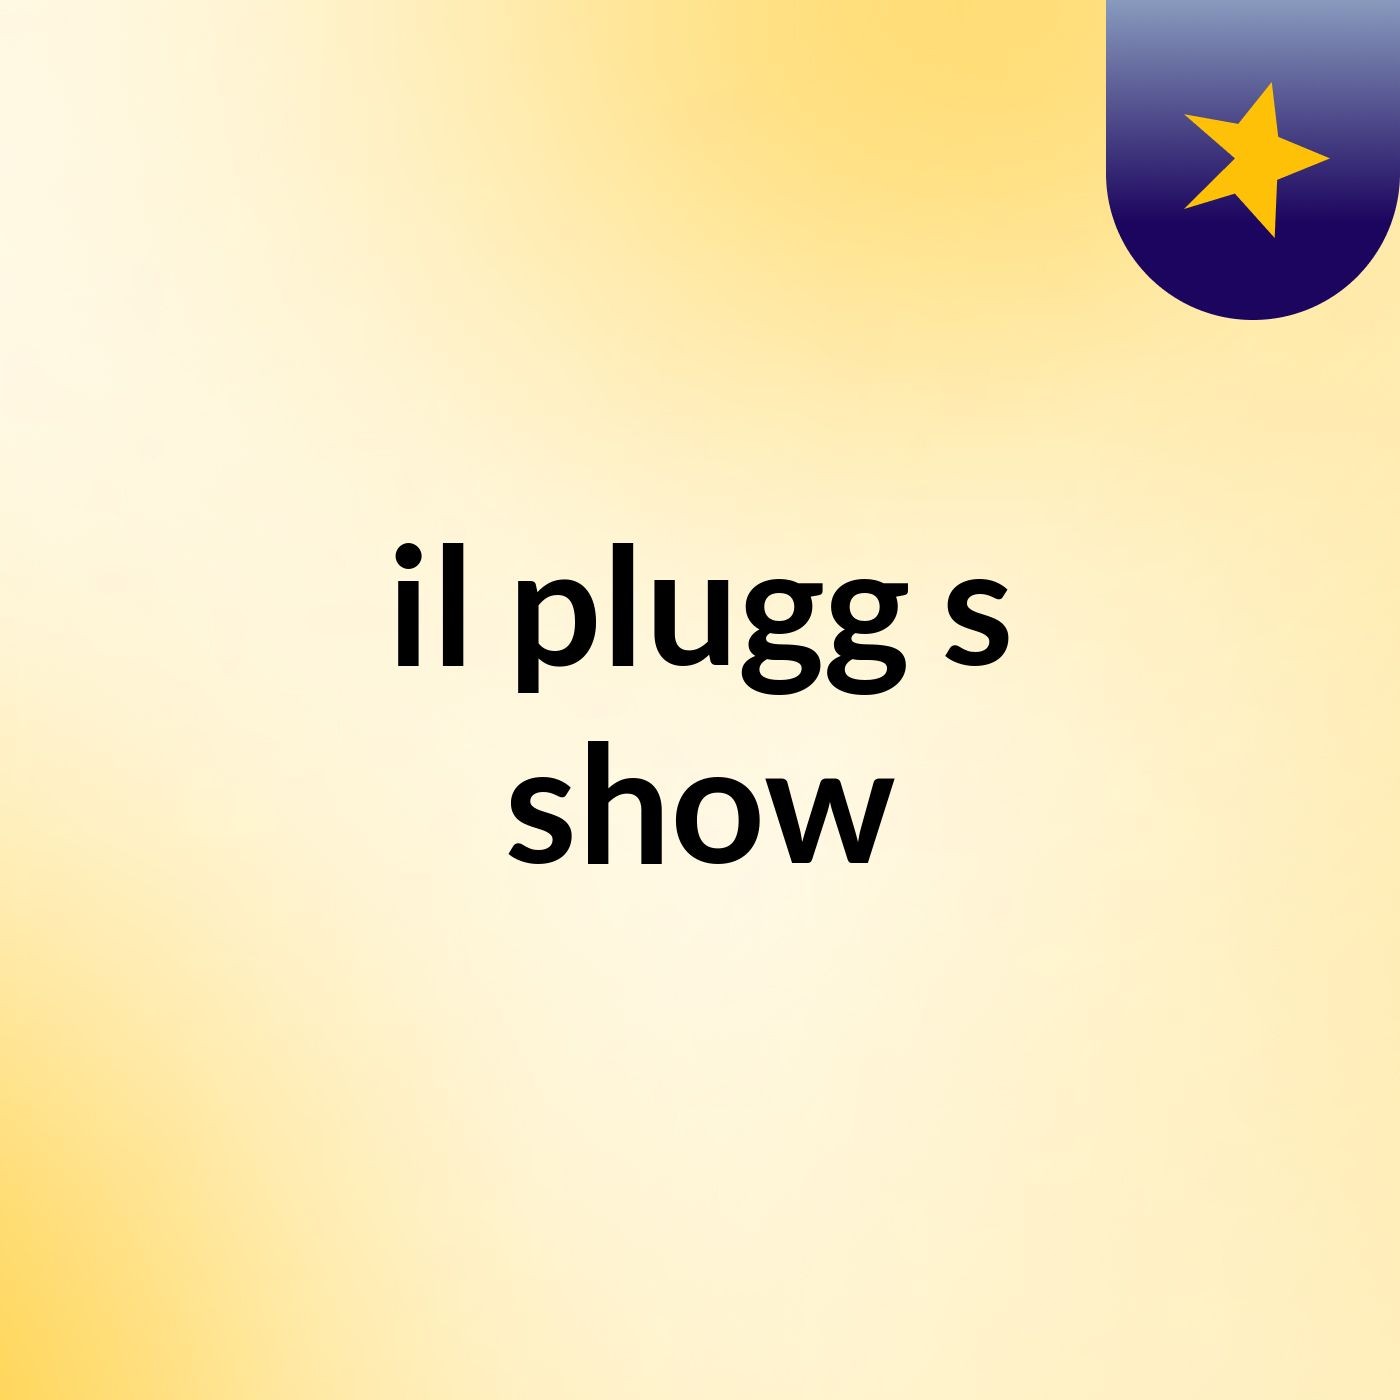 il plugg's show